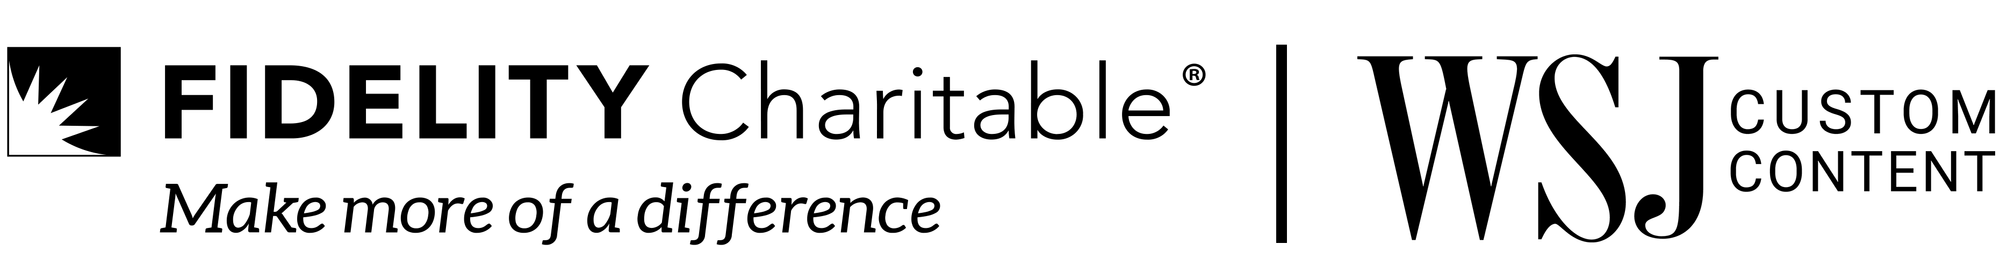 Fidelity Charitable logo and WSJCC logo